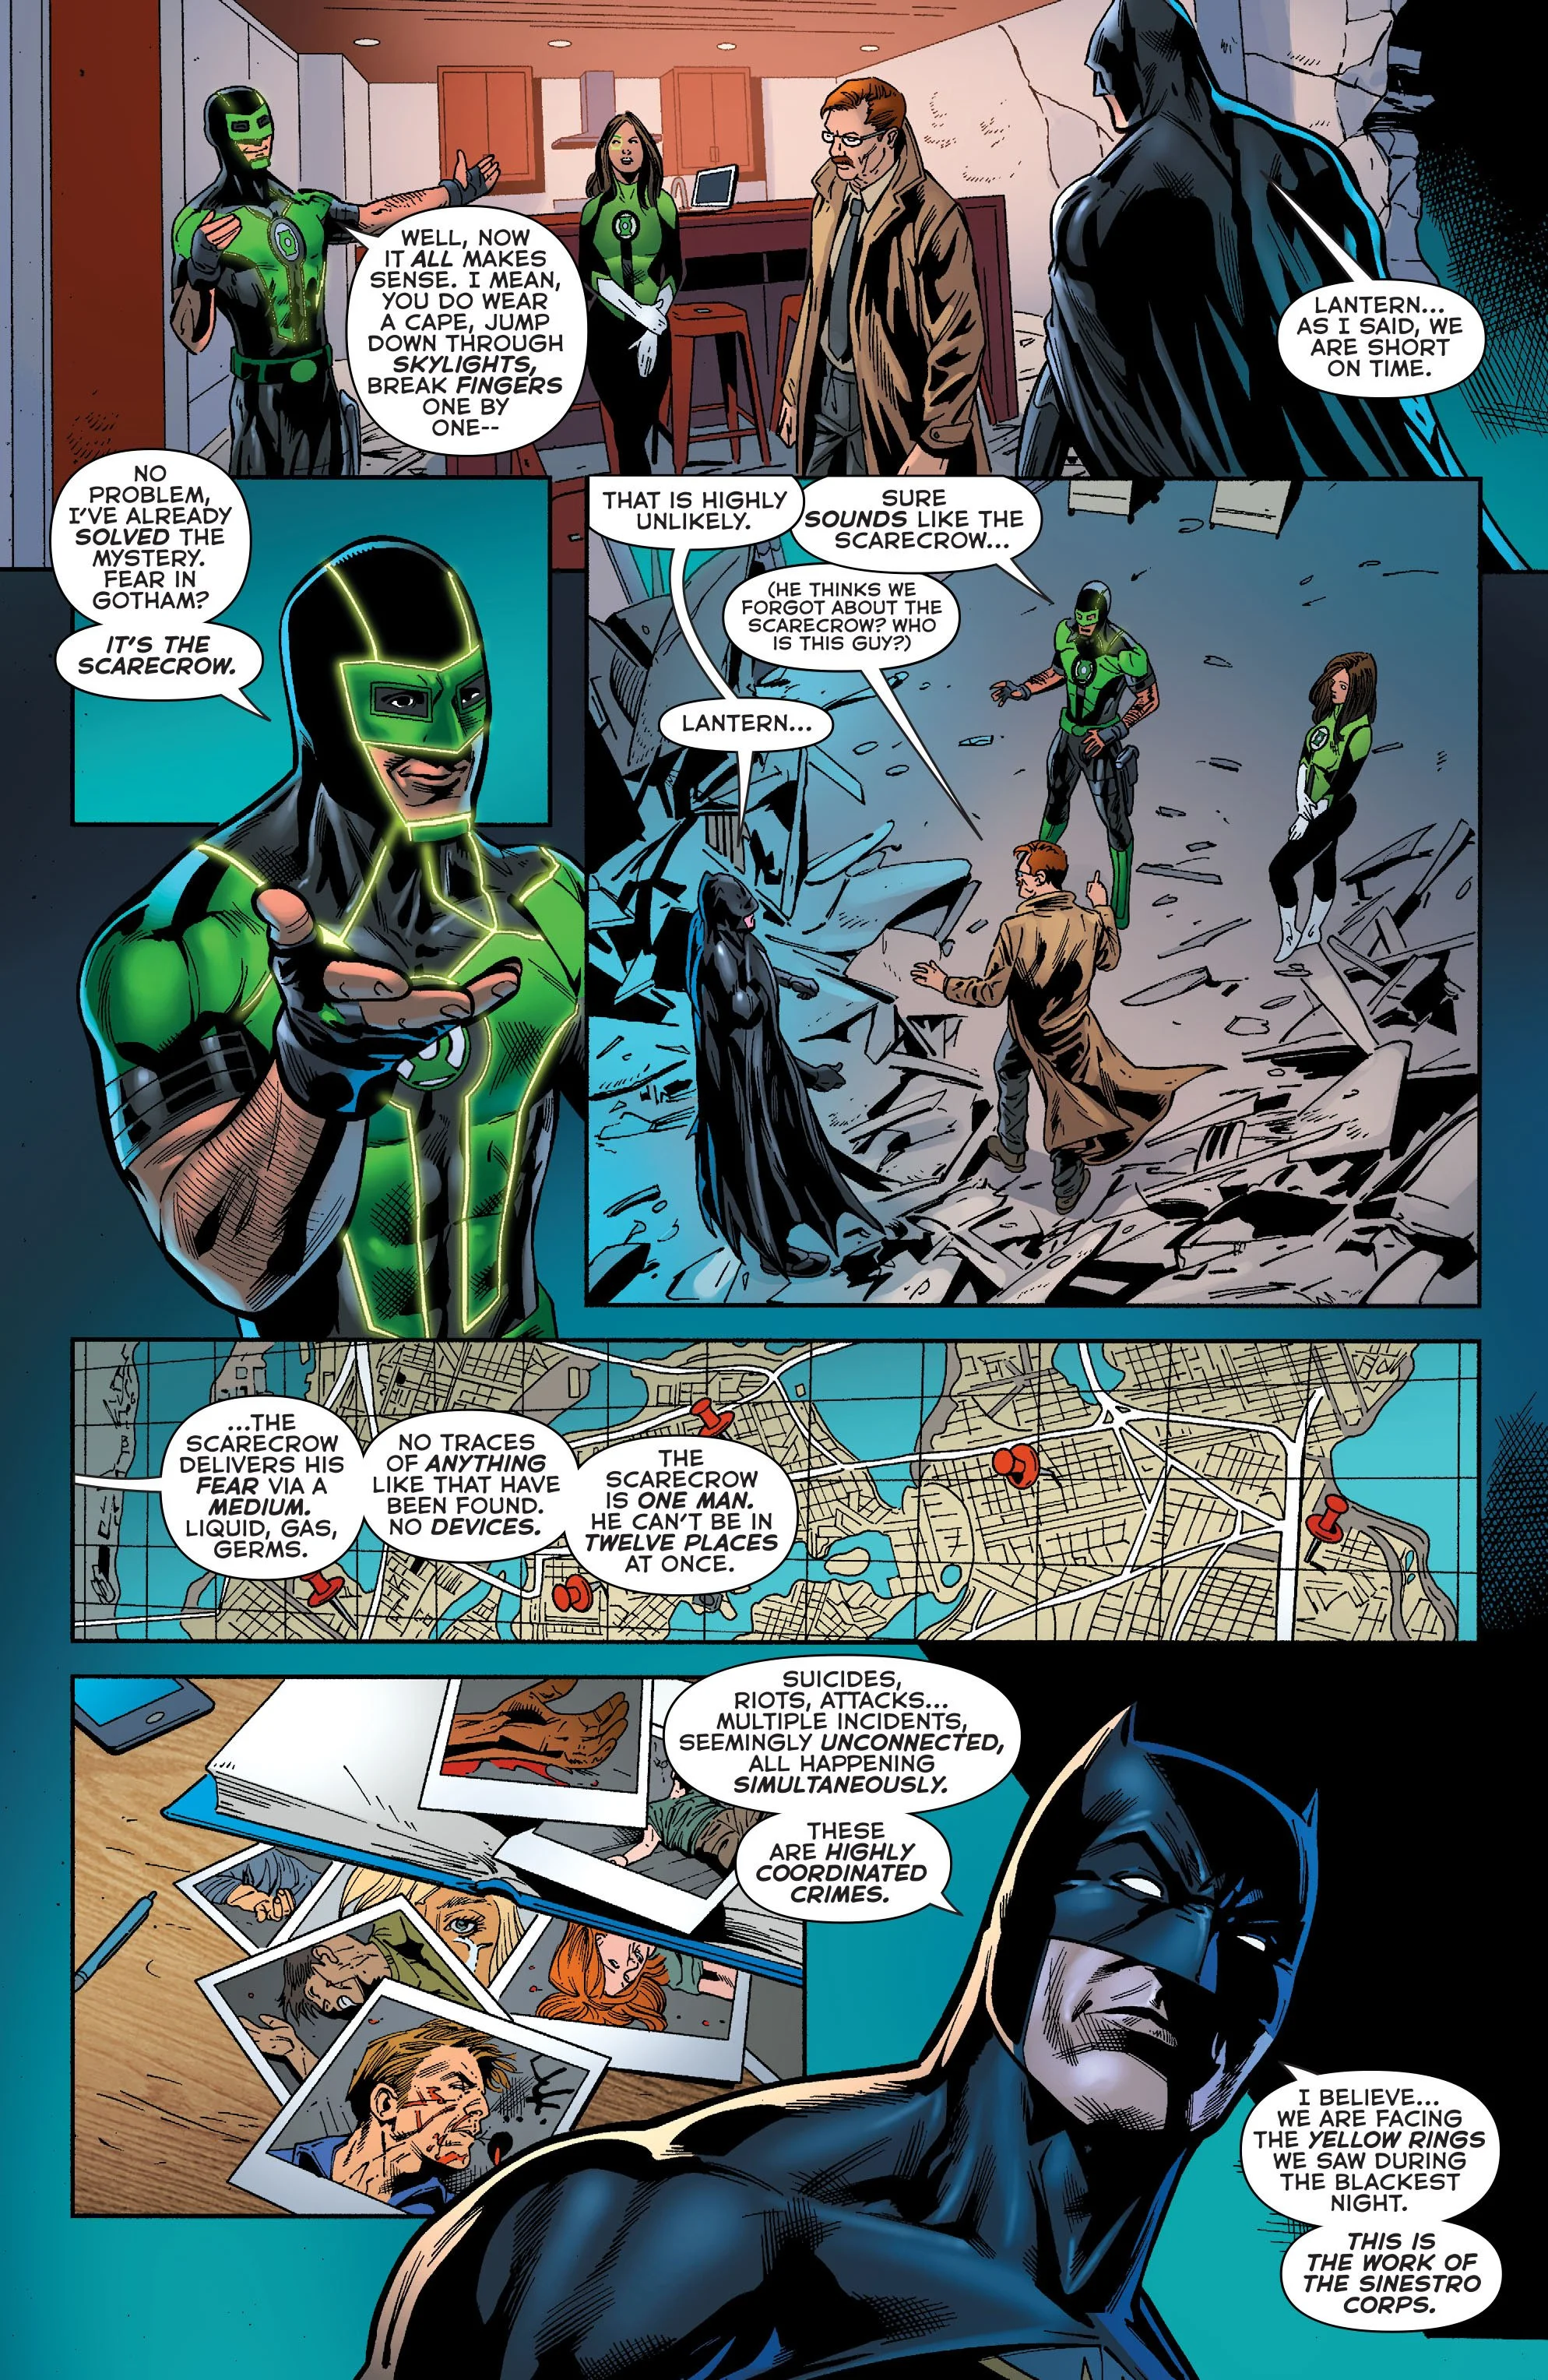 Бэтмен попросил помощи у Зеленых Фонарей - фото 2